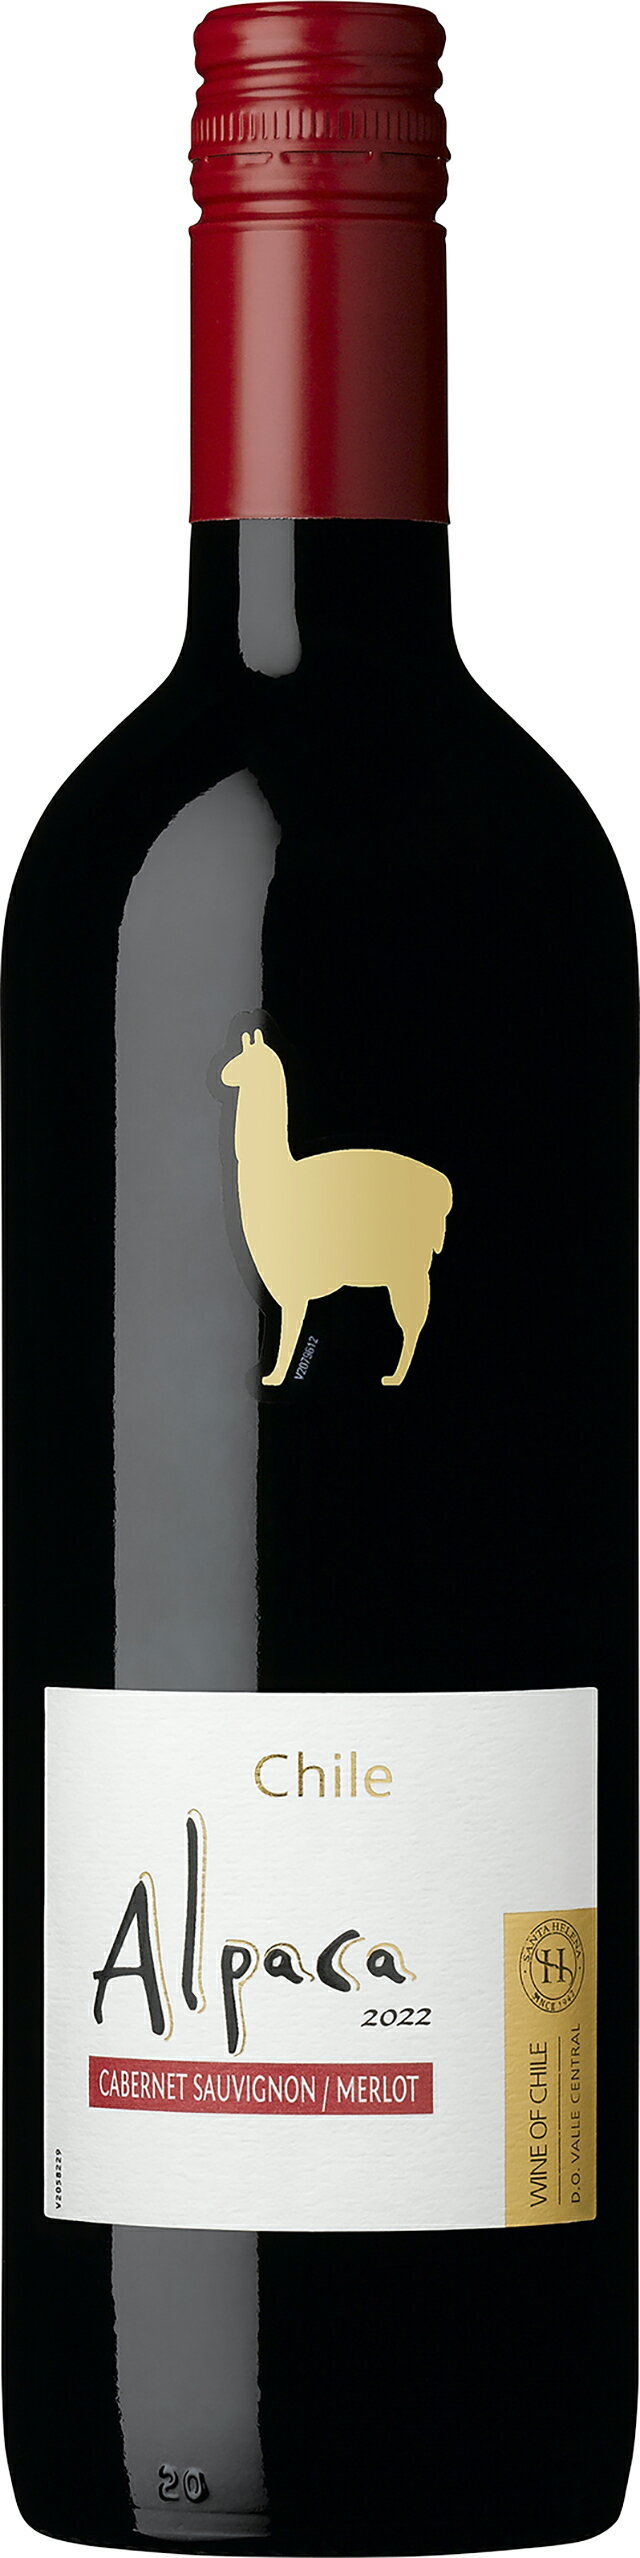 サンタ ヘレナ アルパカ カベルネ メルロー チリ 750ml ワイン ミディアムボディ セントラル ヴァレー